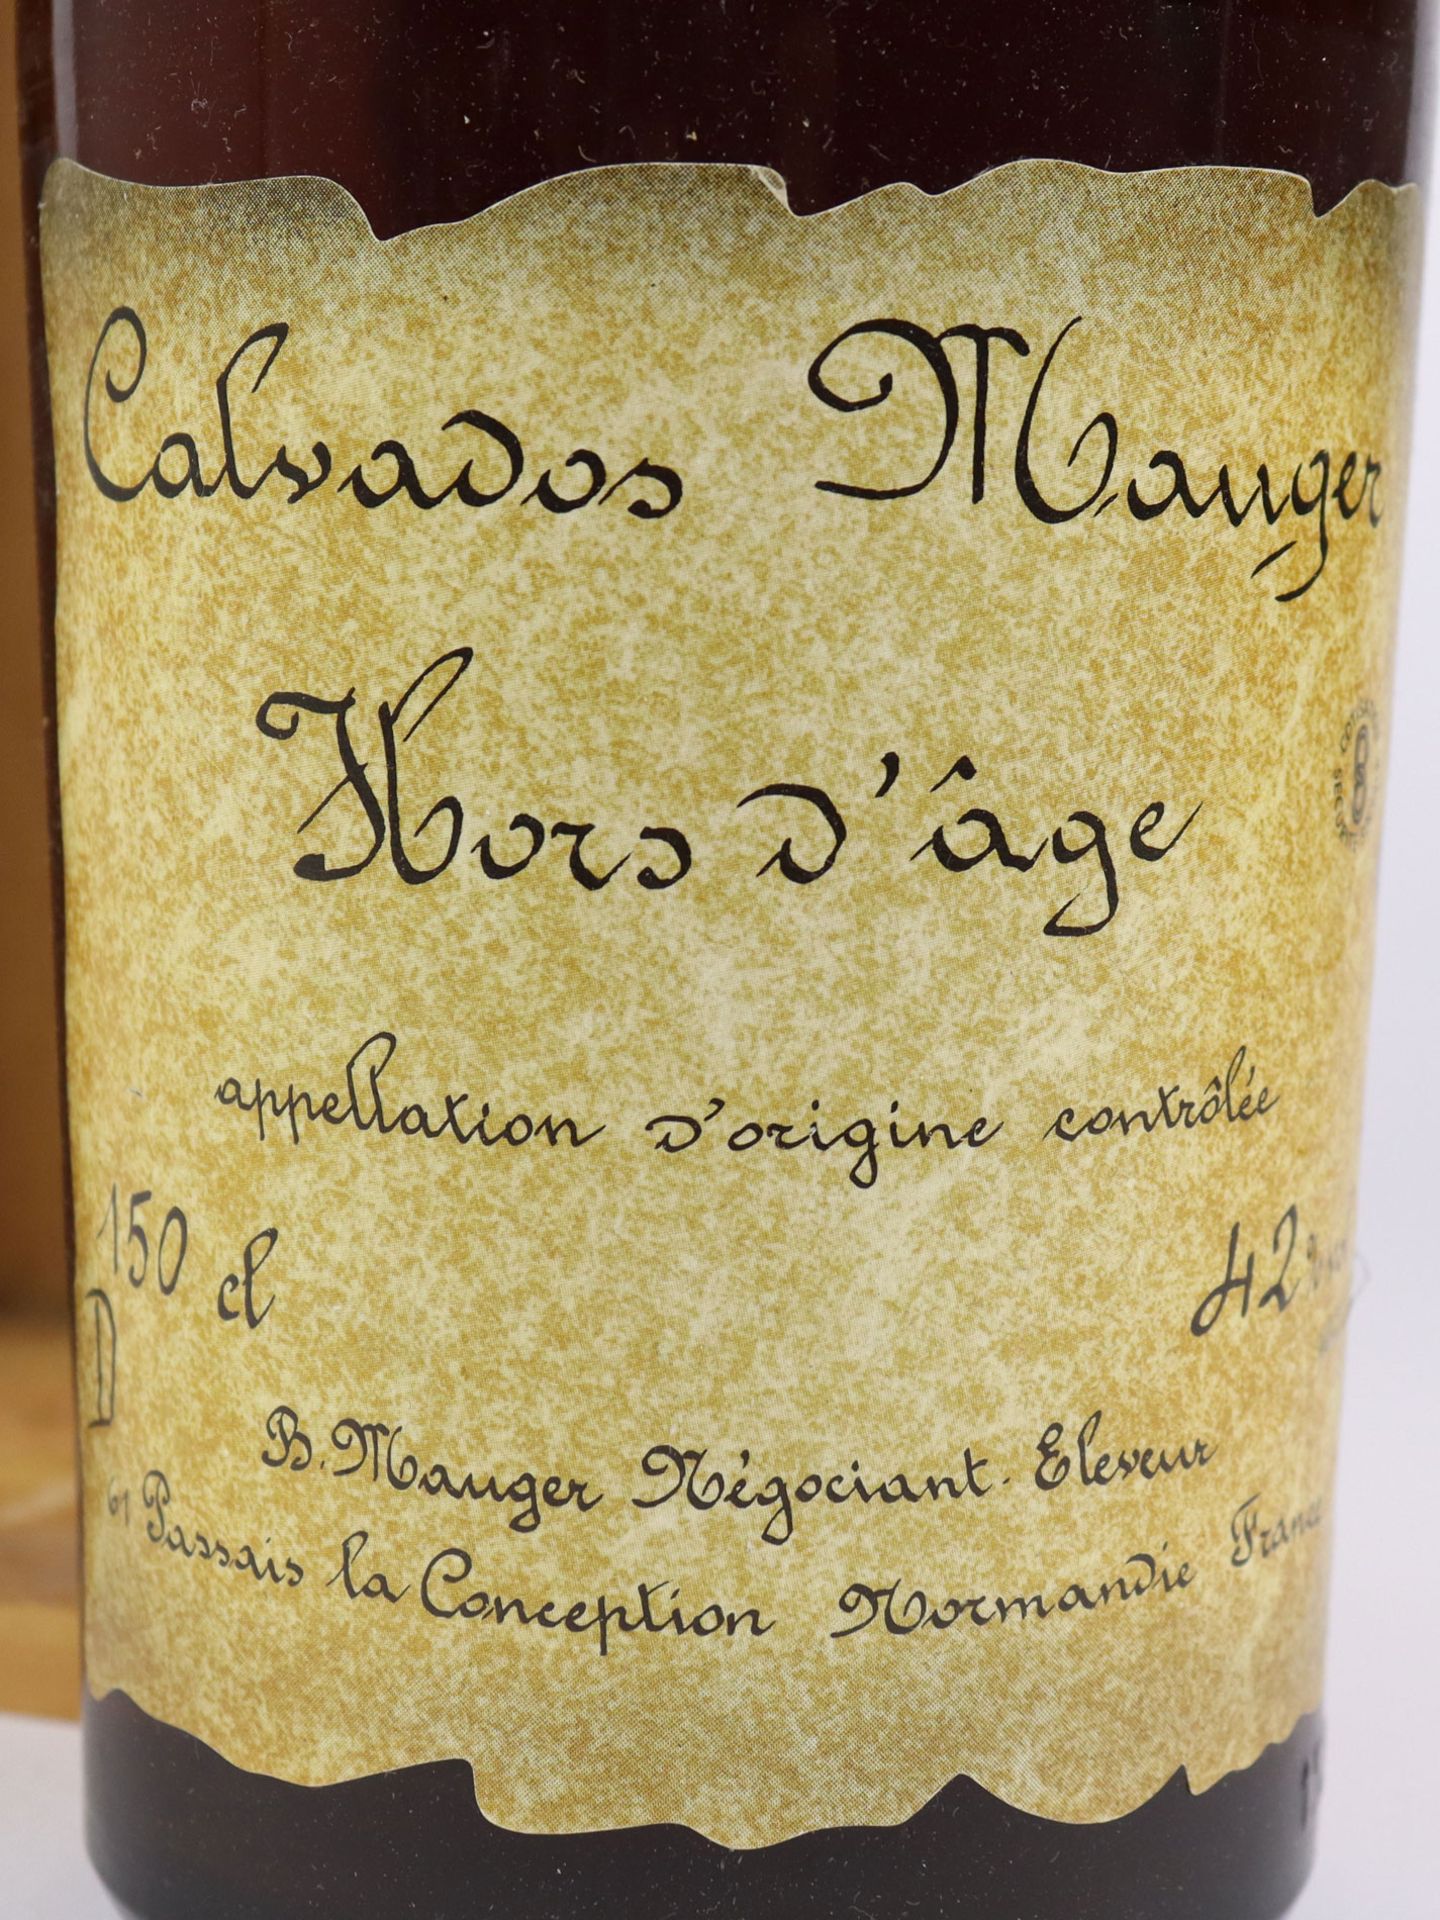 Calvados Manger - Image 3 of 4